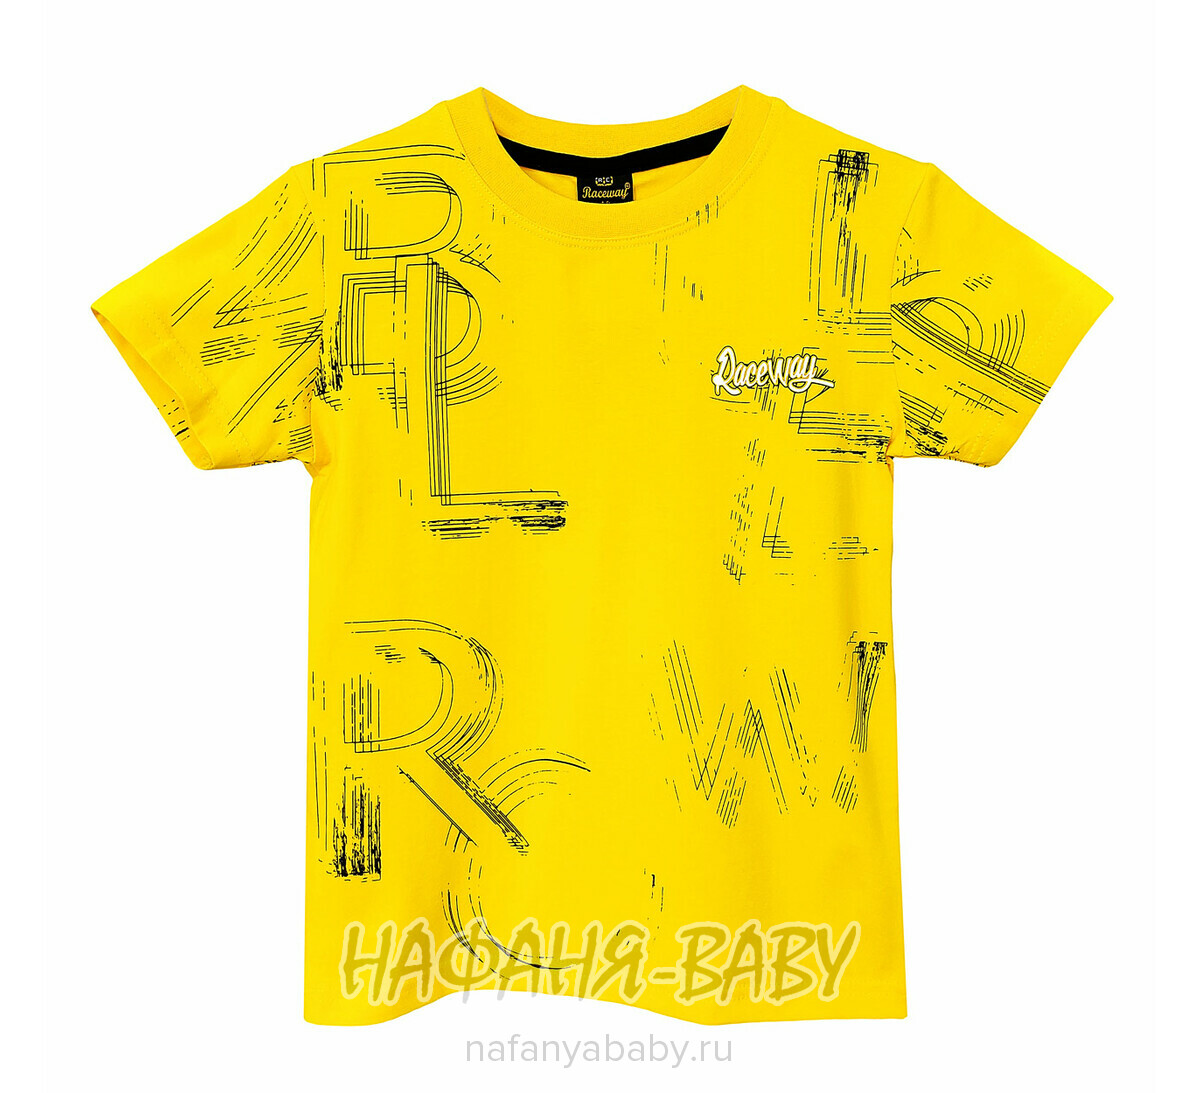 Детская футболка RCW арт. 5830, 5-8 лет, цвет желтый, оптом Турция